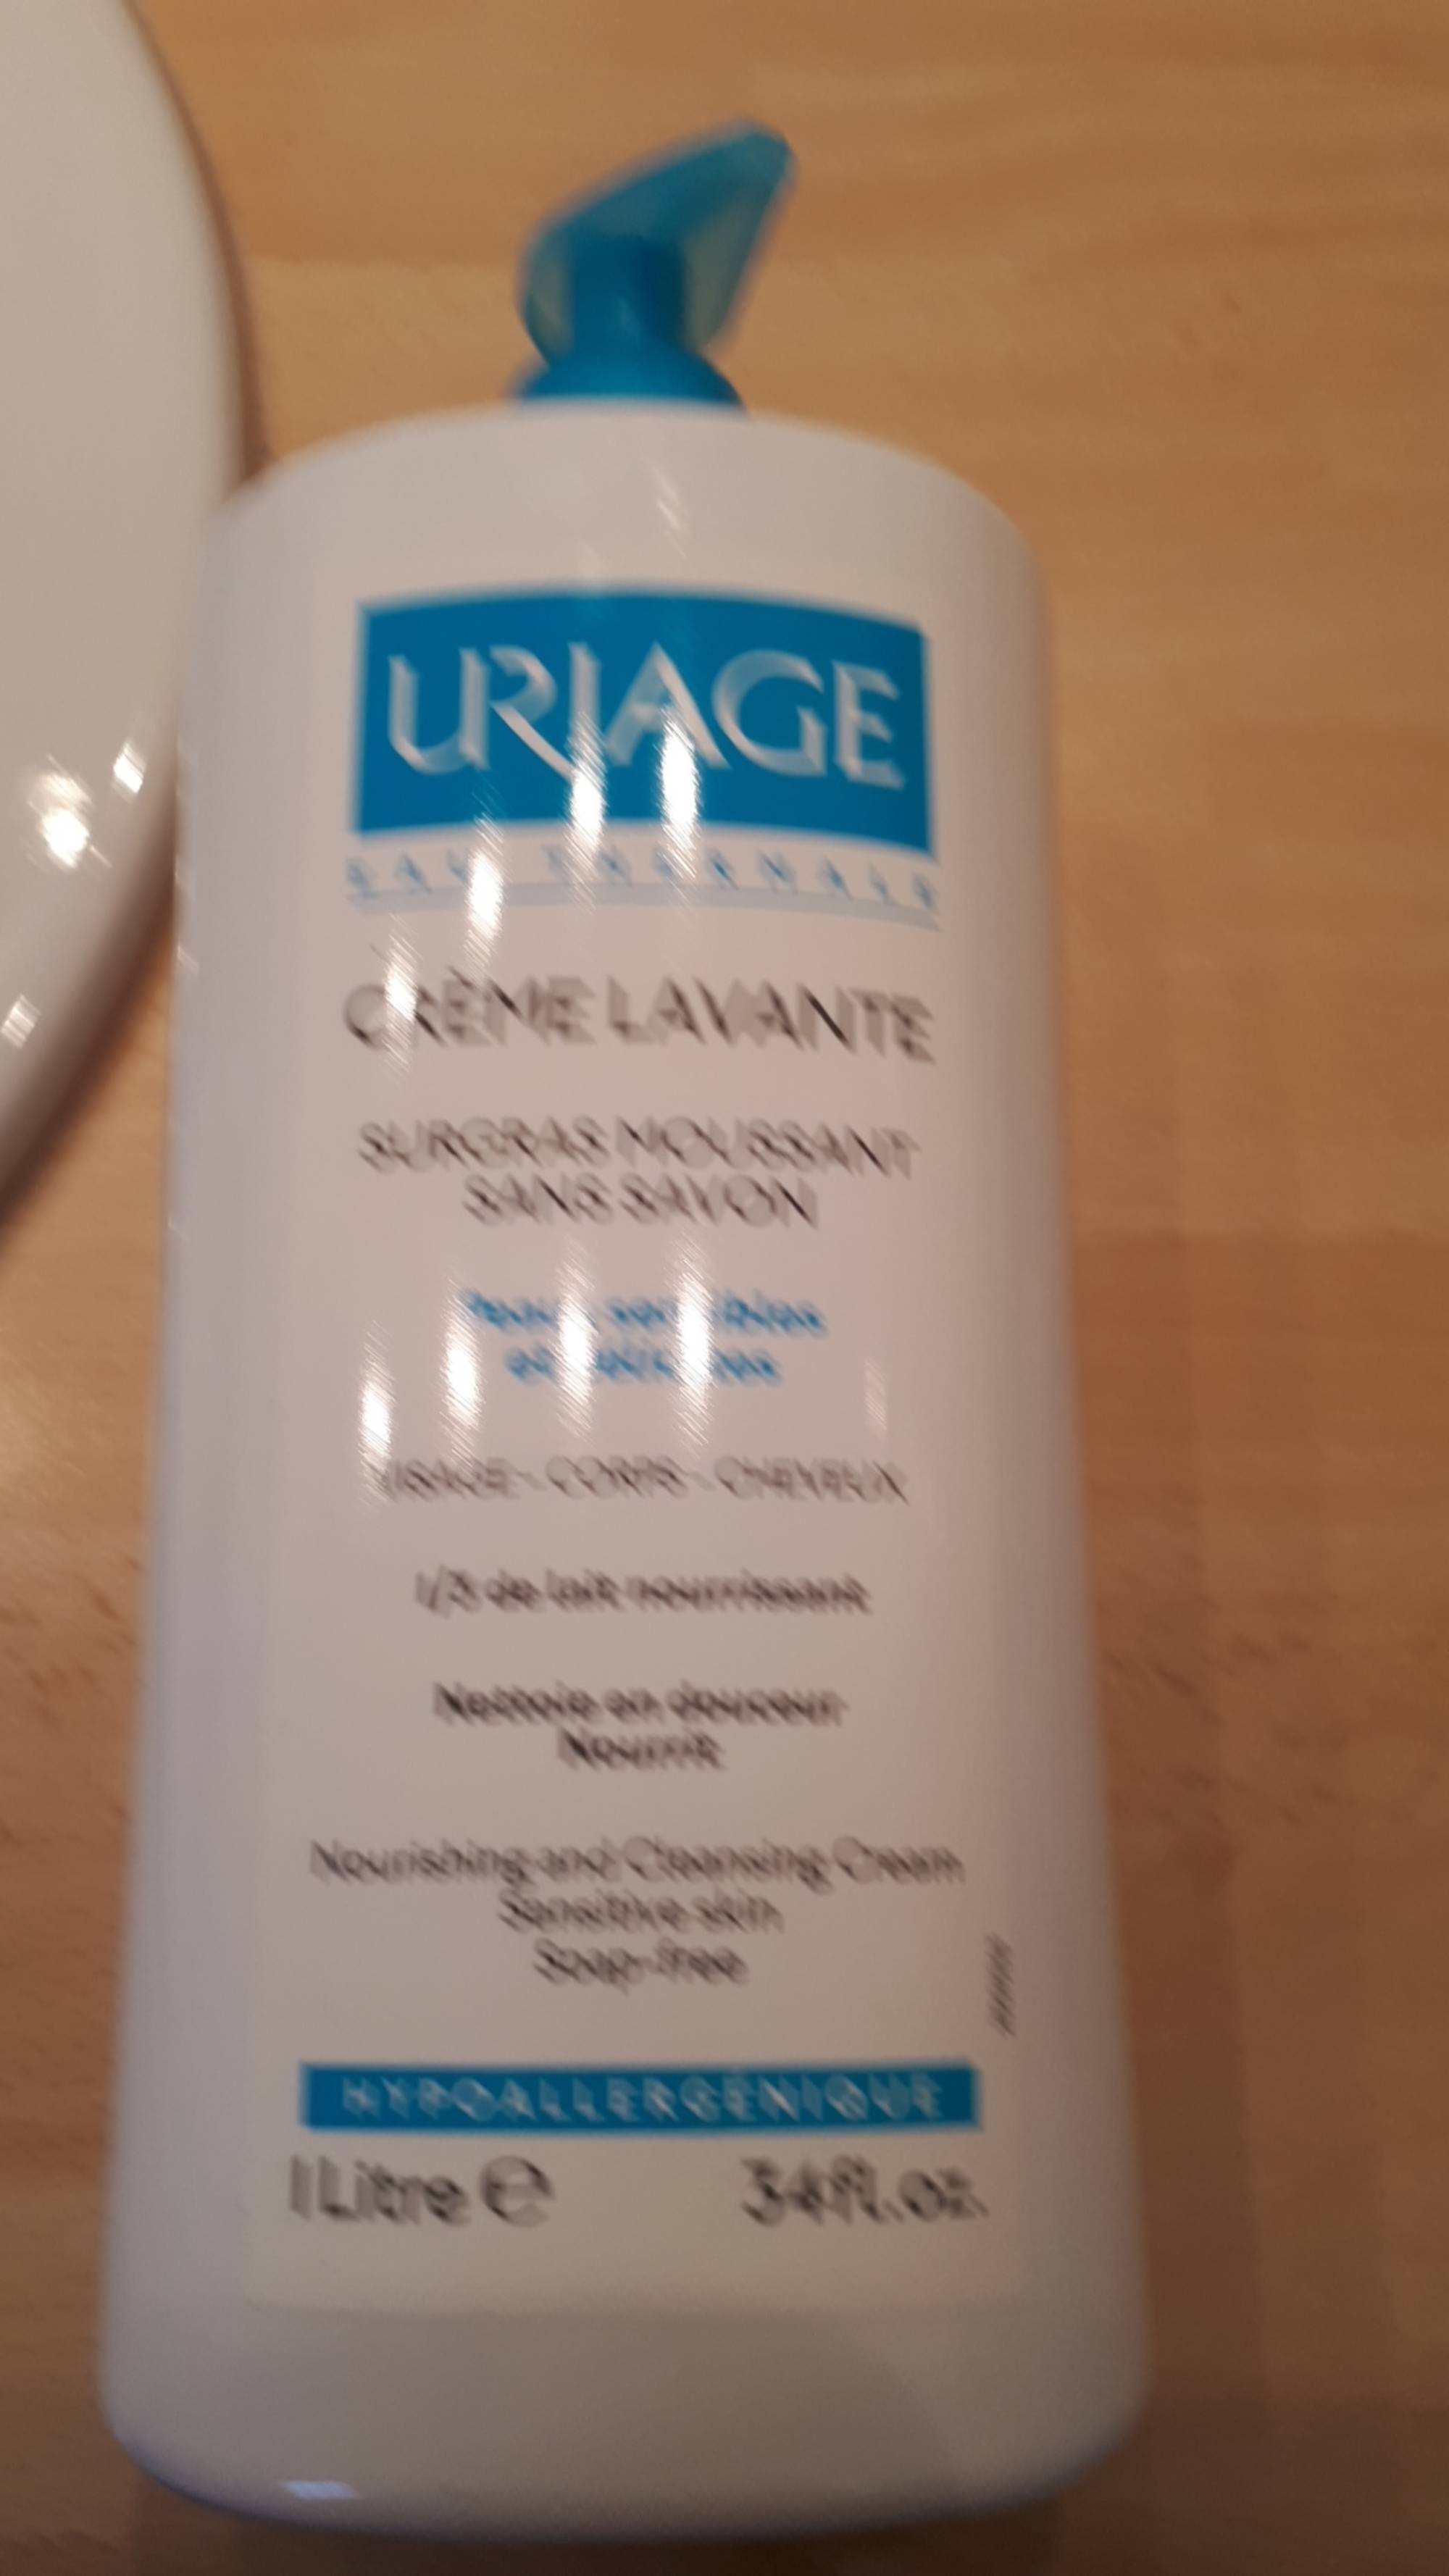 URIAGE - Crème lavante - Surgras moussant sans savon